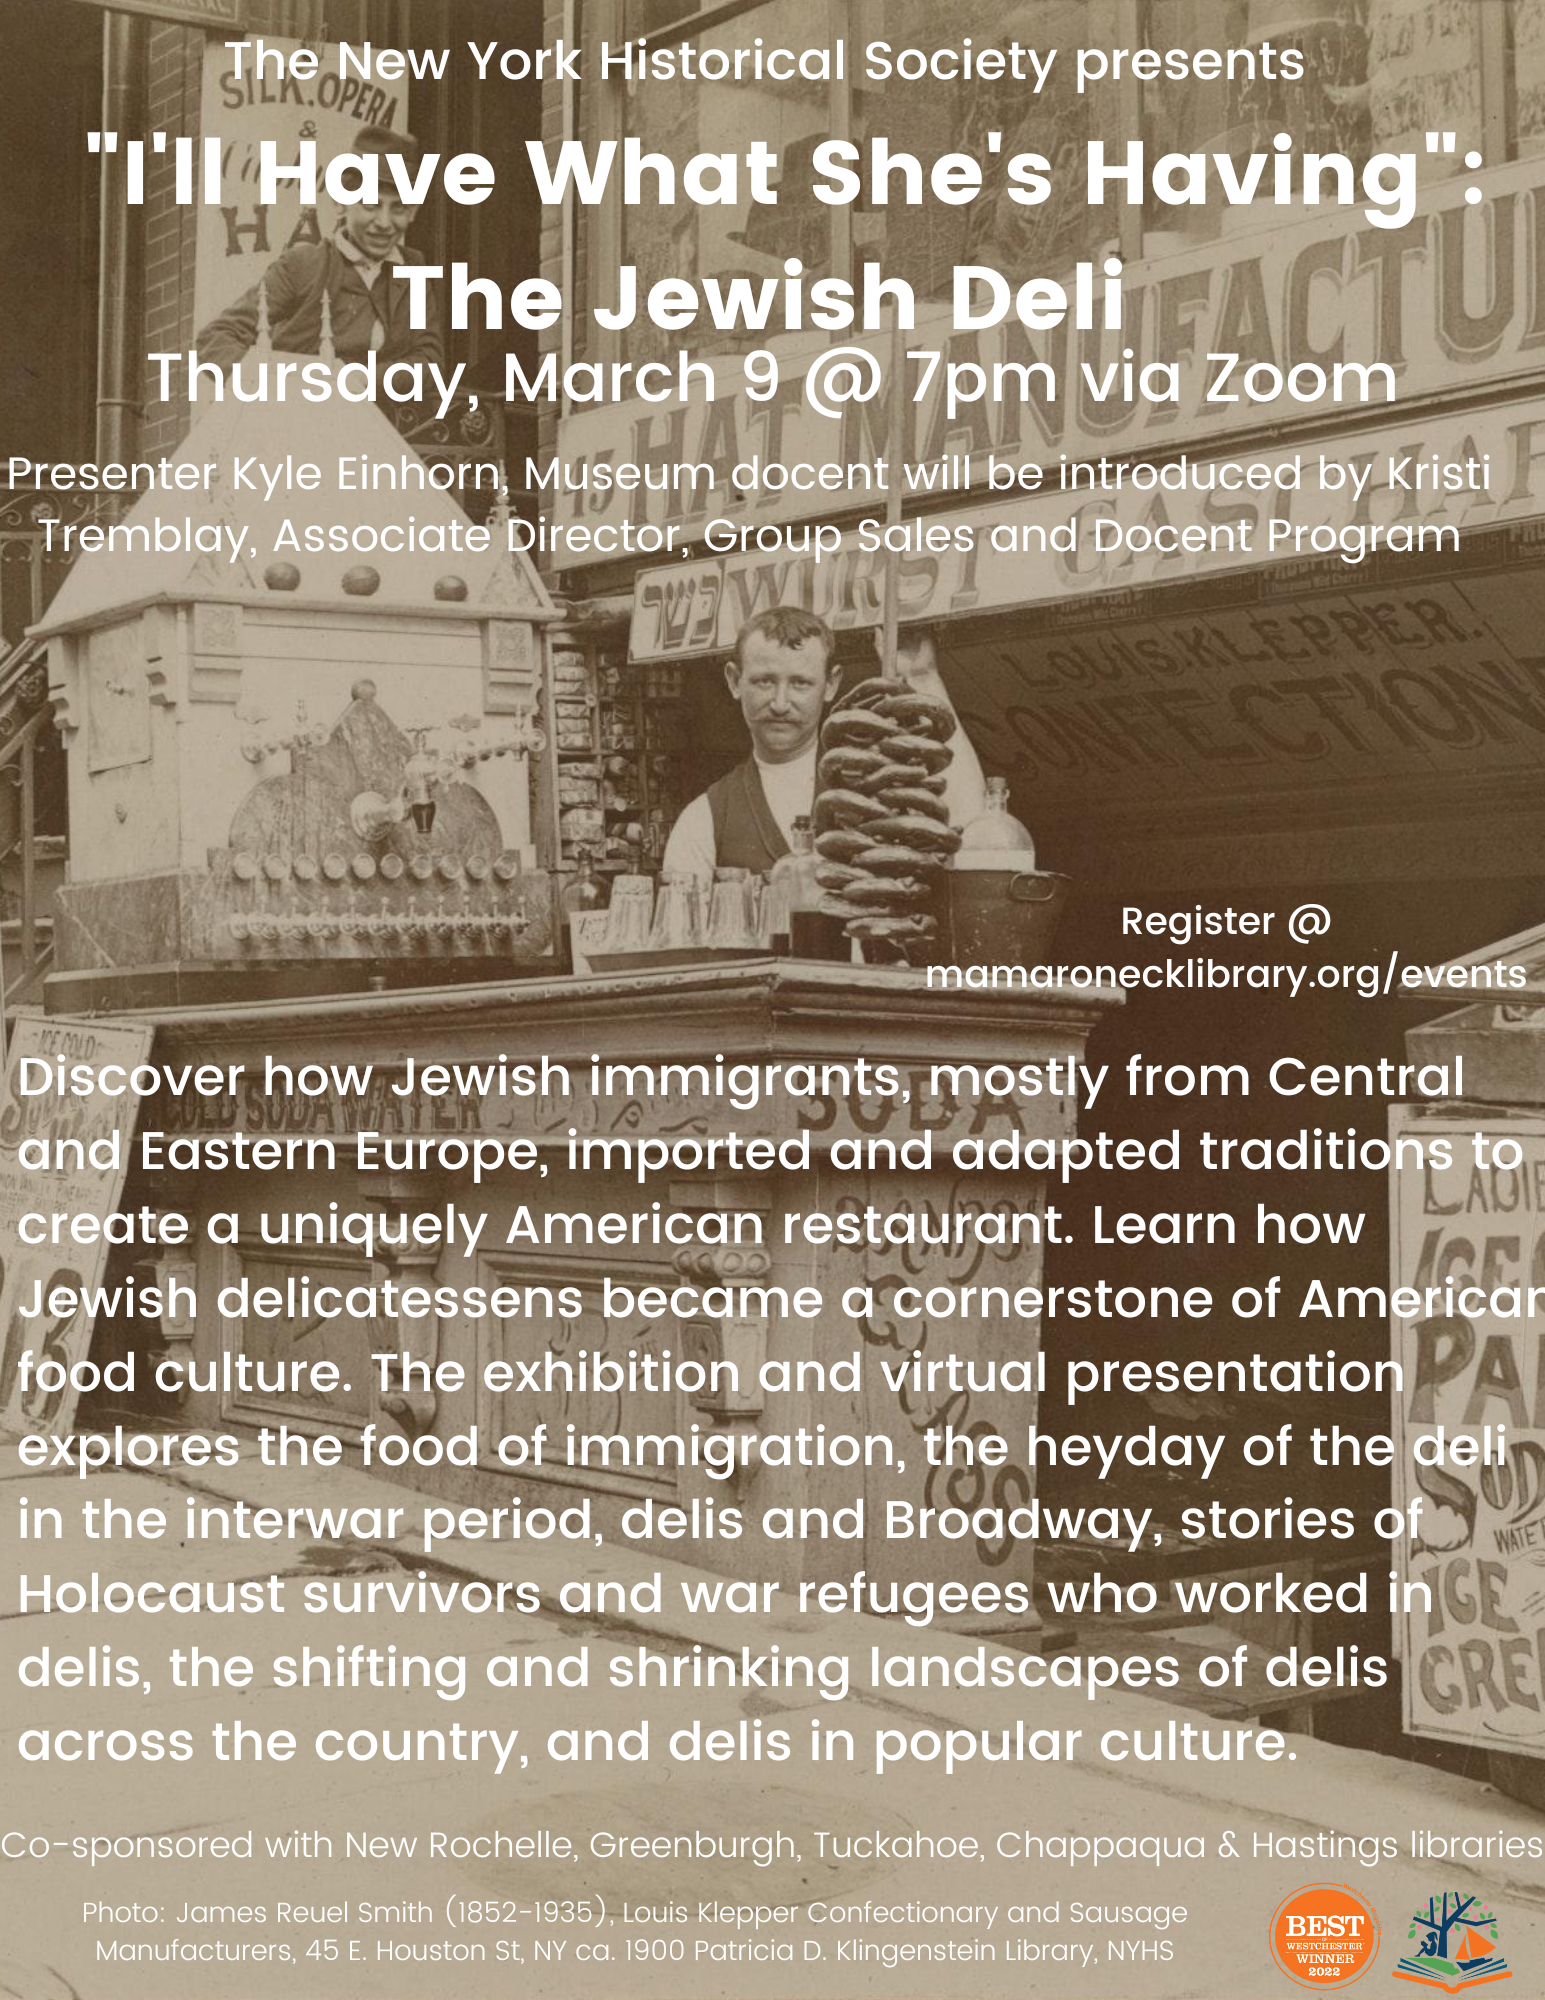 3/9 Jewish Deli program via zoom